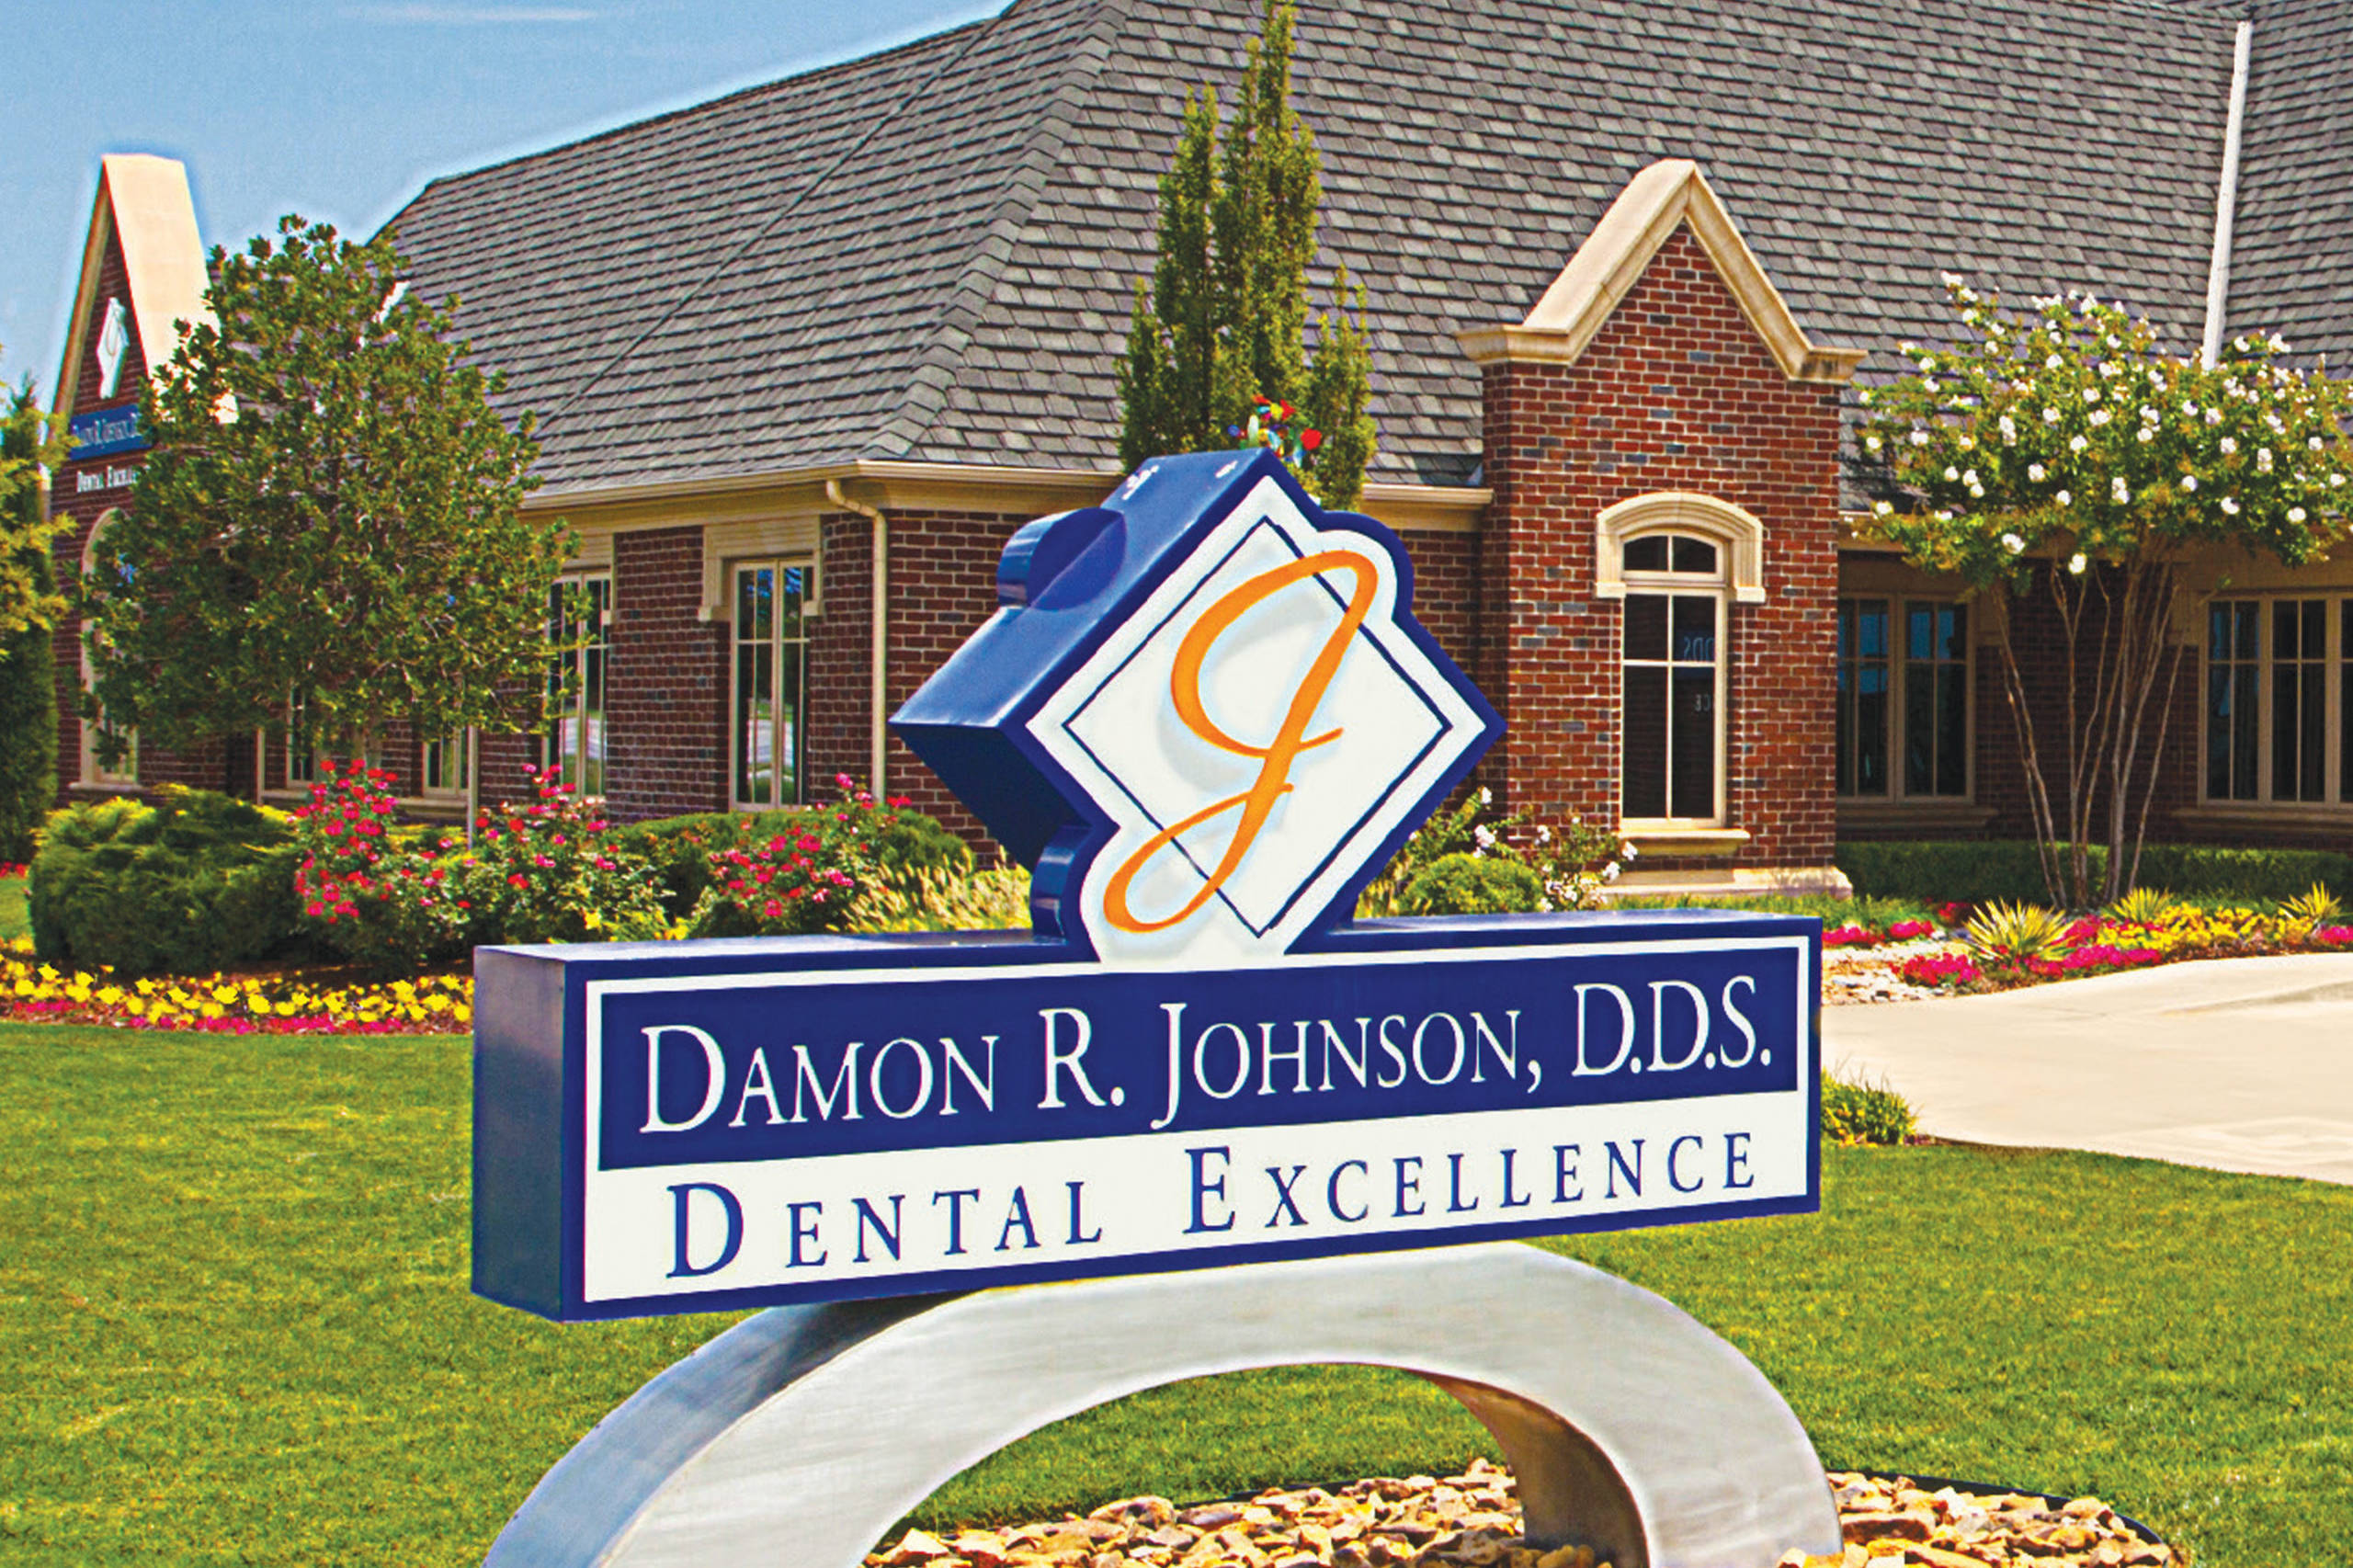 Damon R. Johnson DDS Dental Excellence Sign